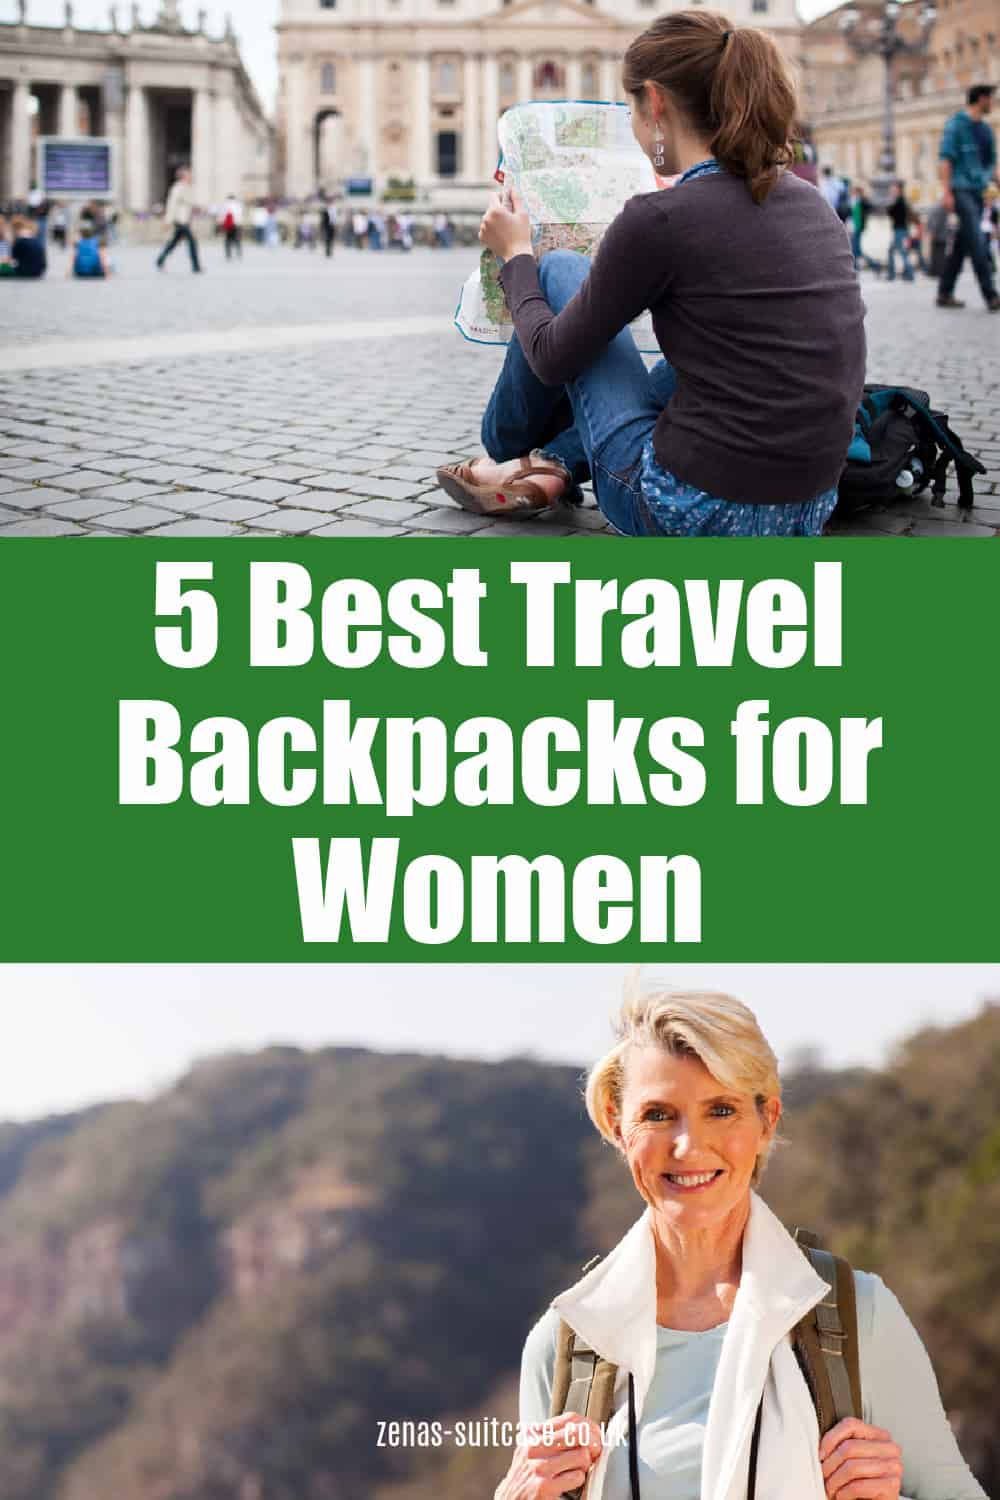 5 Best Travel Backpacks for Women